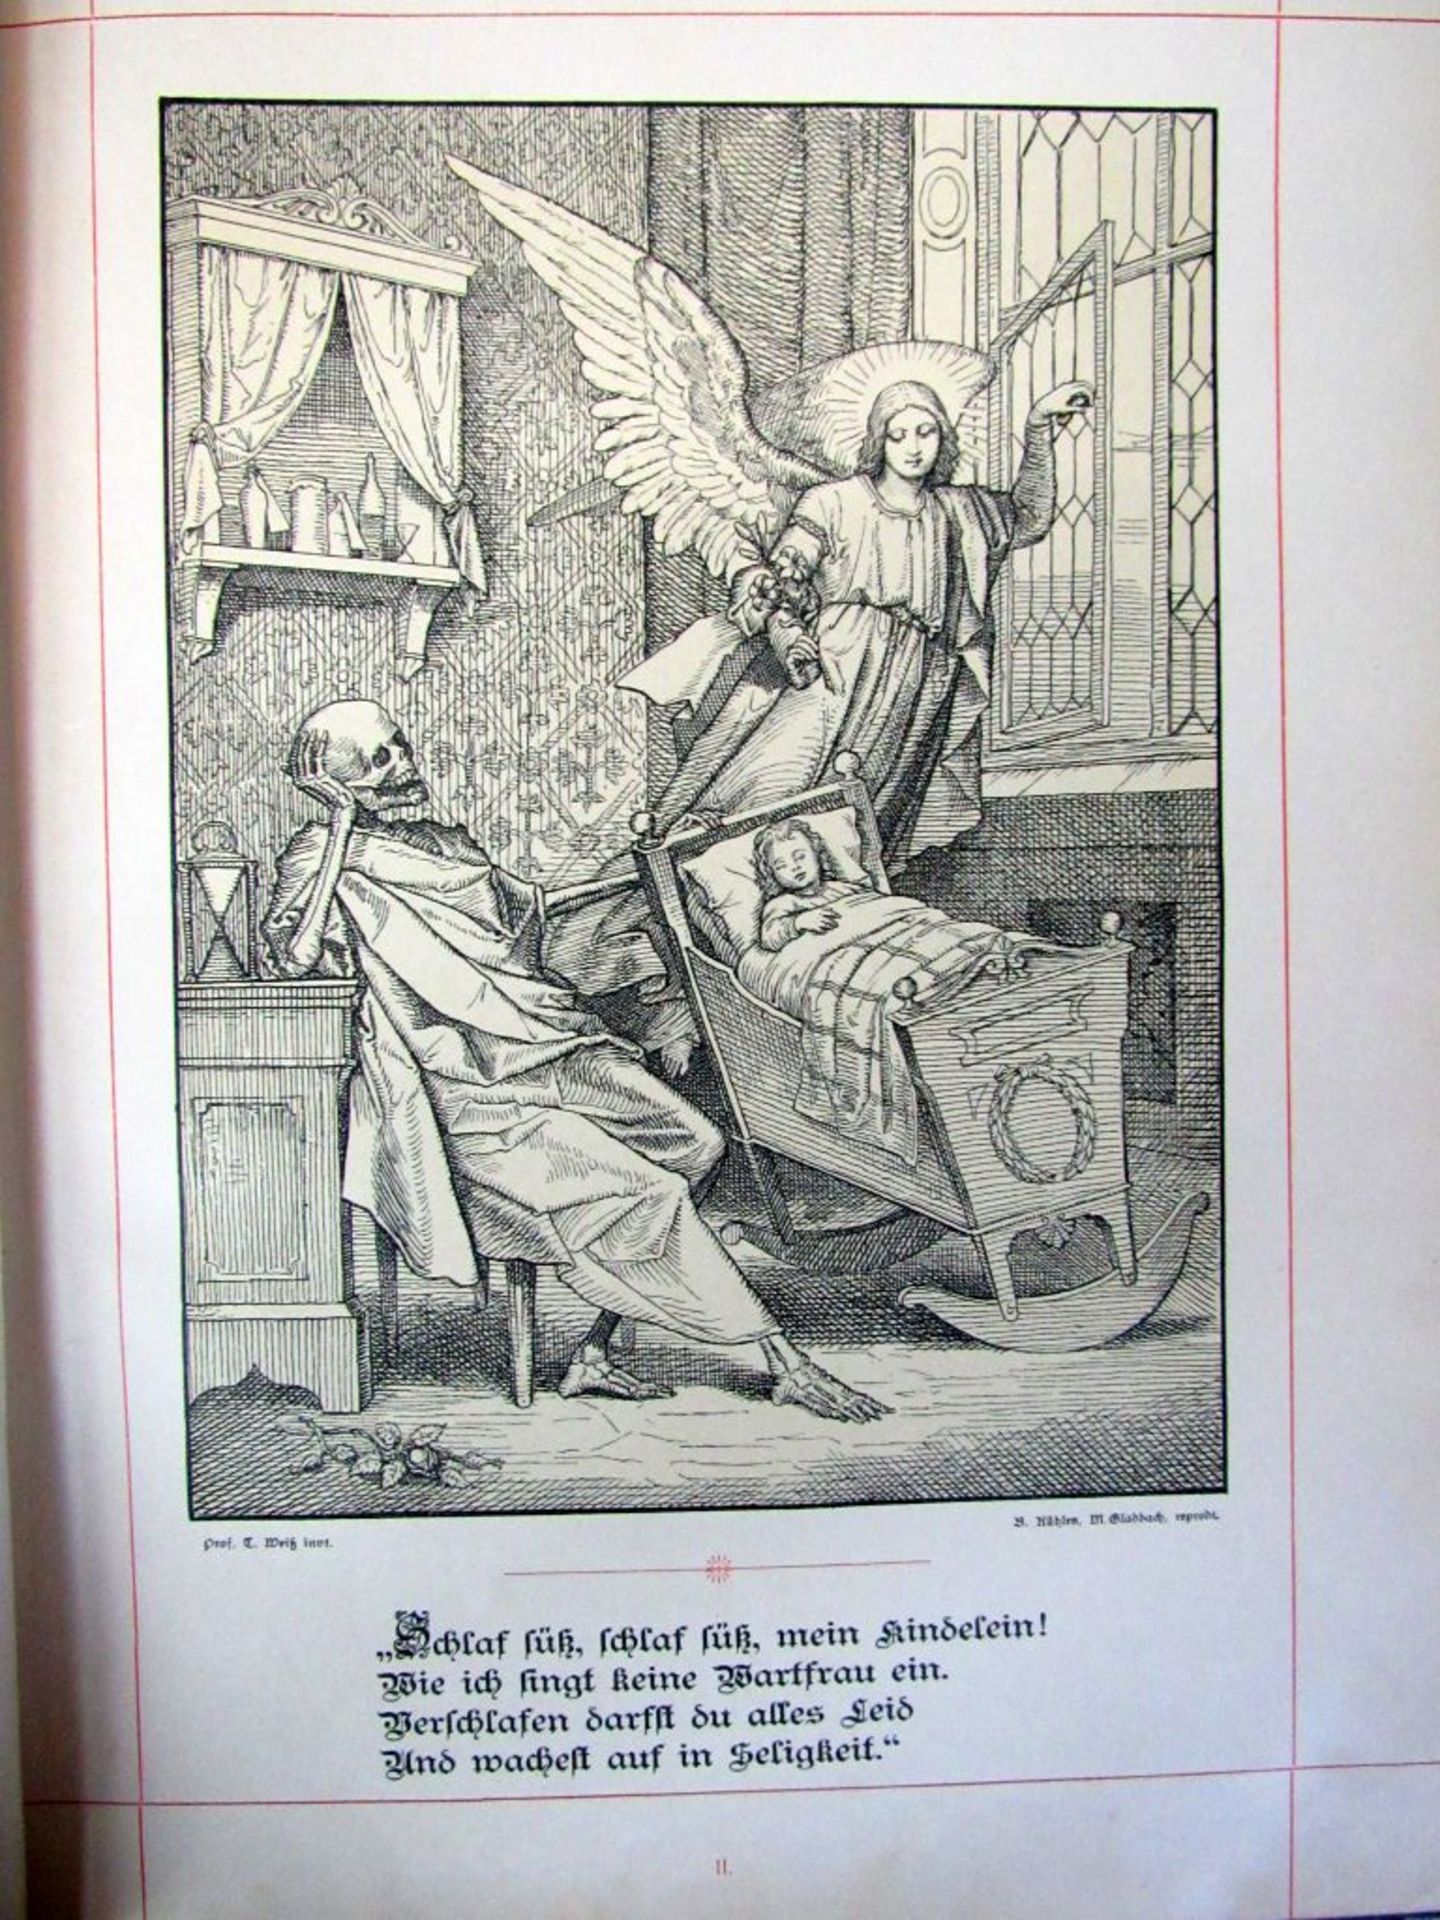 Seltenes Buch Bilderbuch des Todes 20 - Image 3 of 7